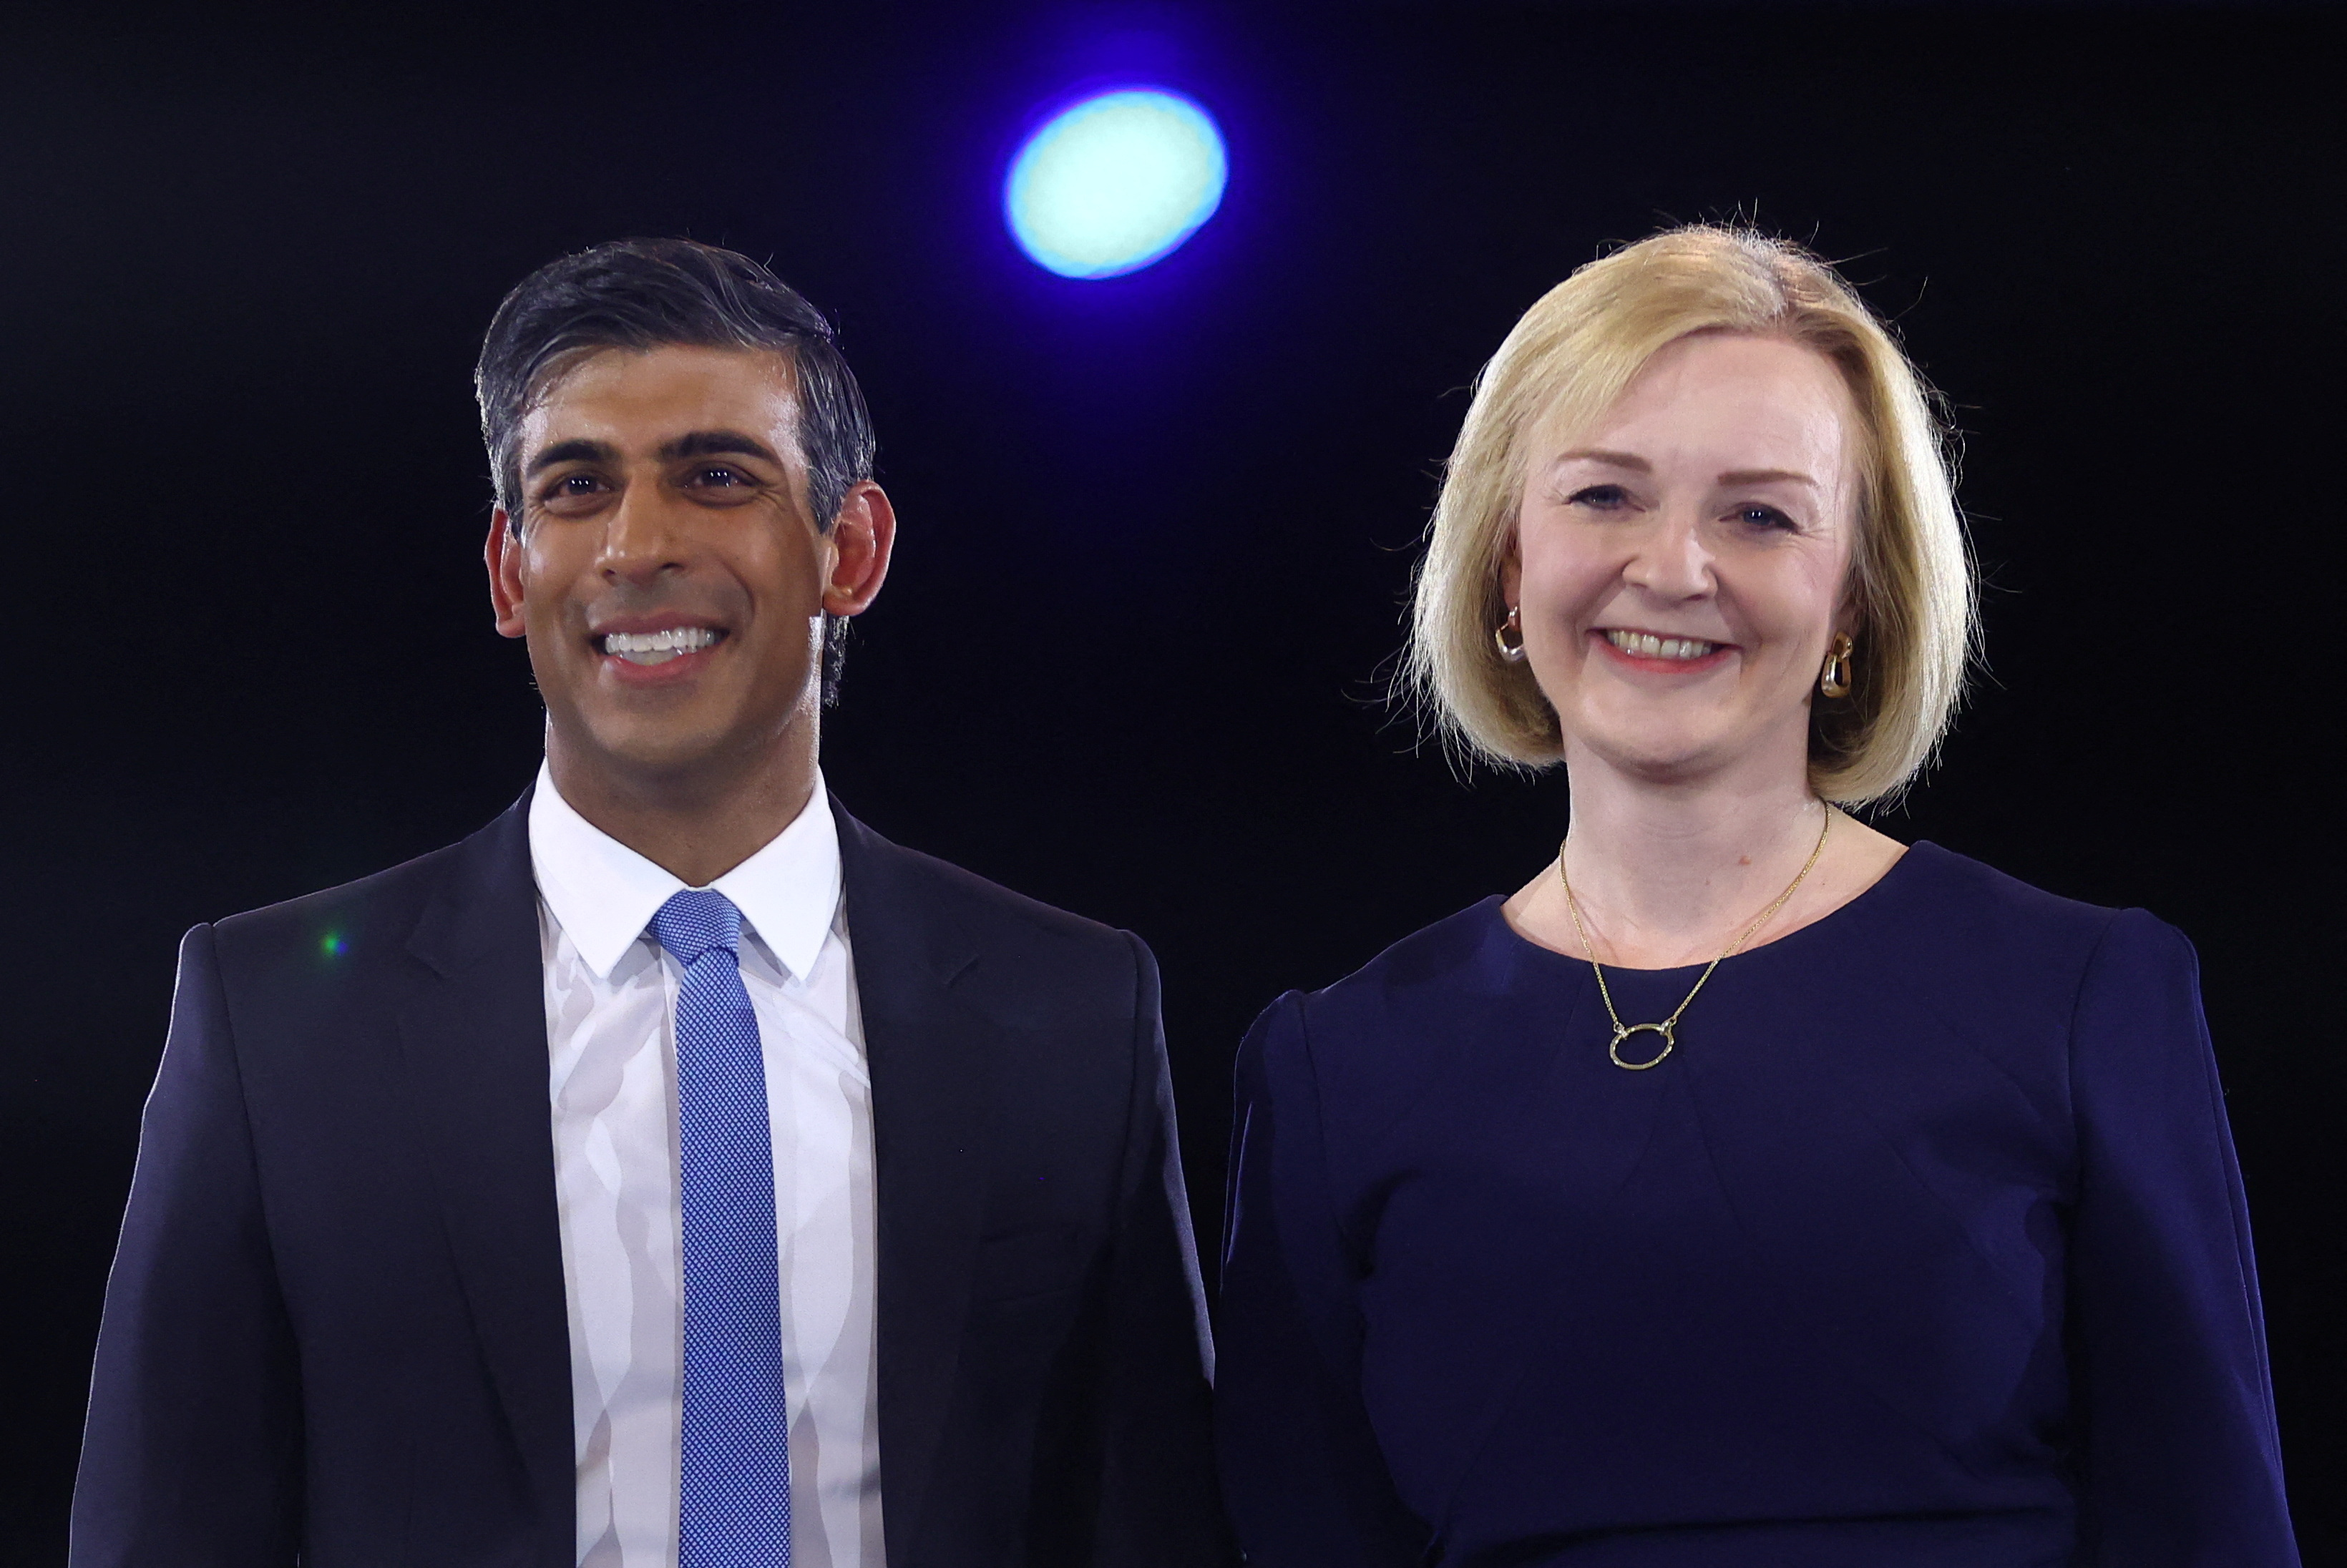 Los candidatos Liz Truss y Rishi Sunak asisten a un acto electoral, como parte de la campaña de liderazgo del Partido Conservador, en Londres, Gran Bretaña, el 31 de agosto de 2022. REUTERS/Hannah McKay